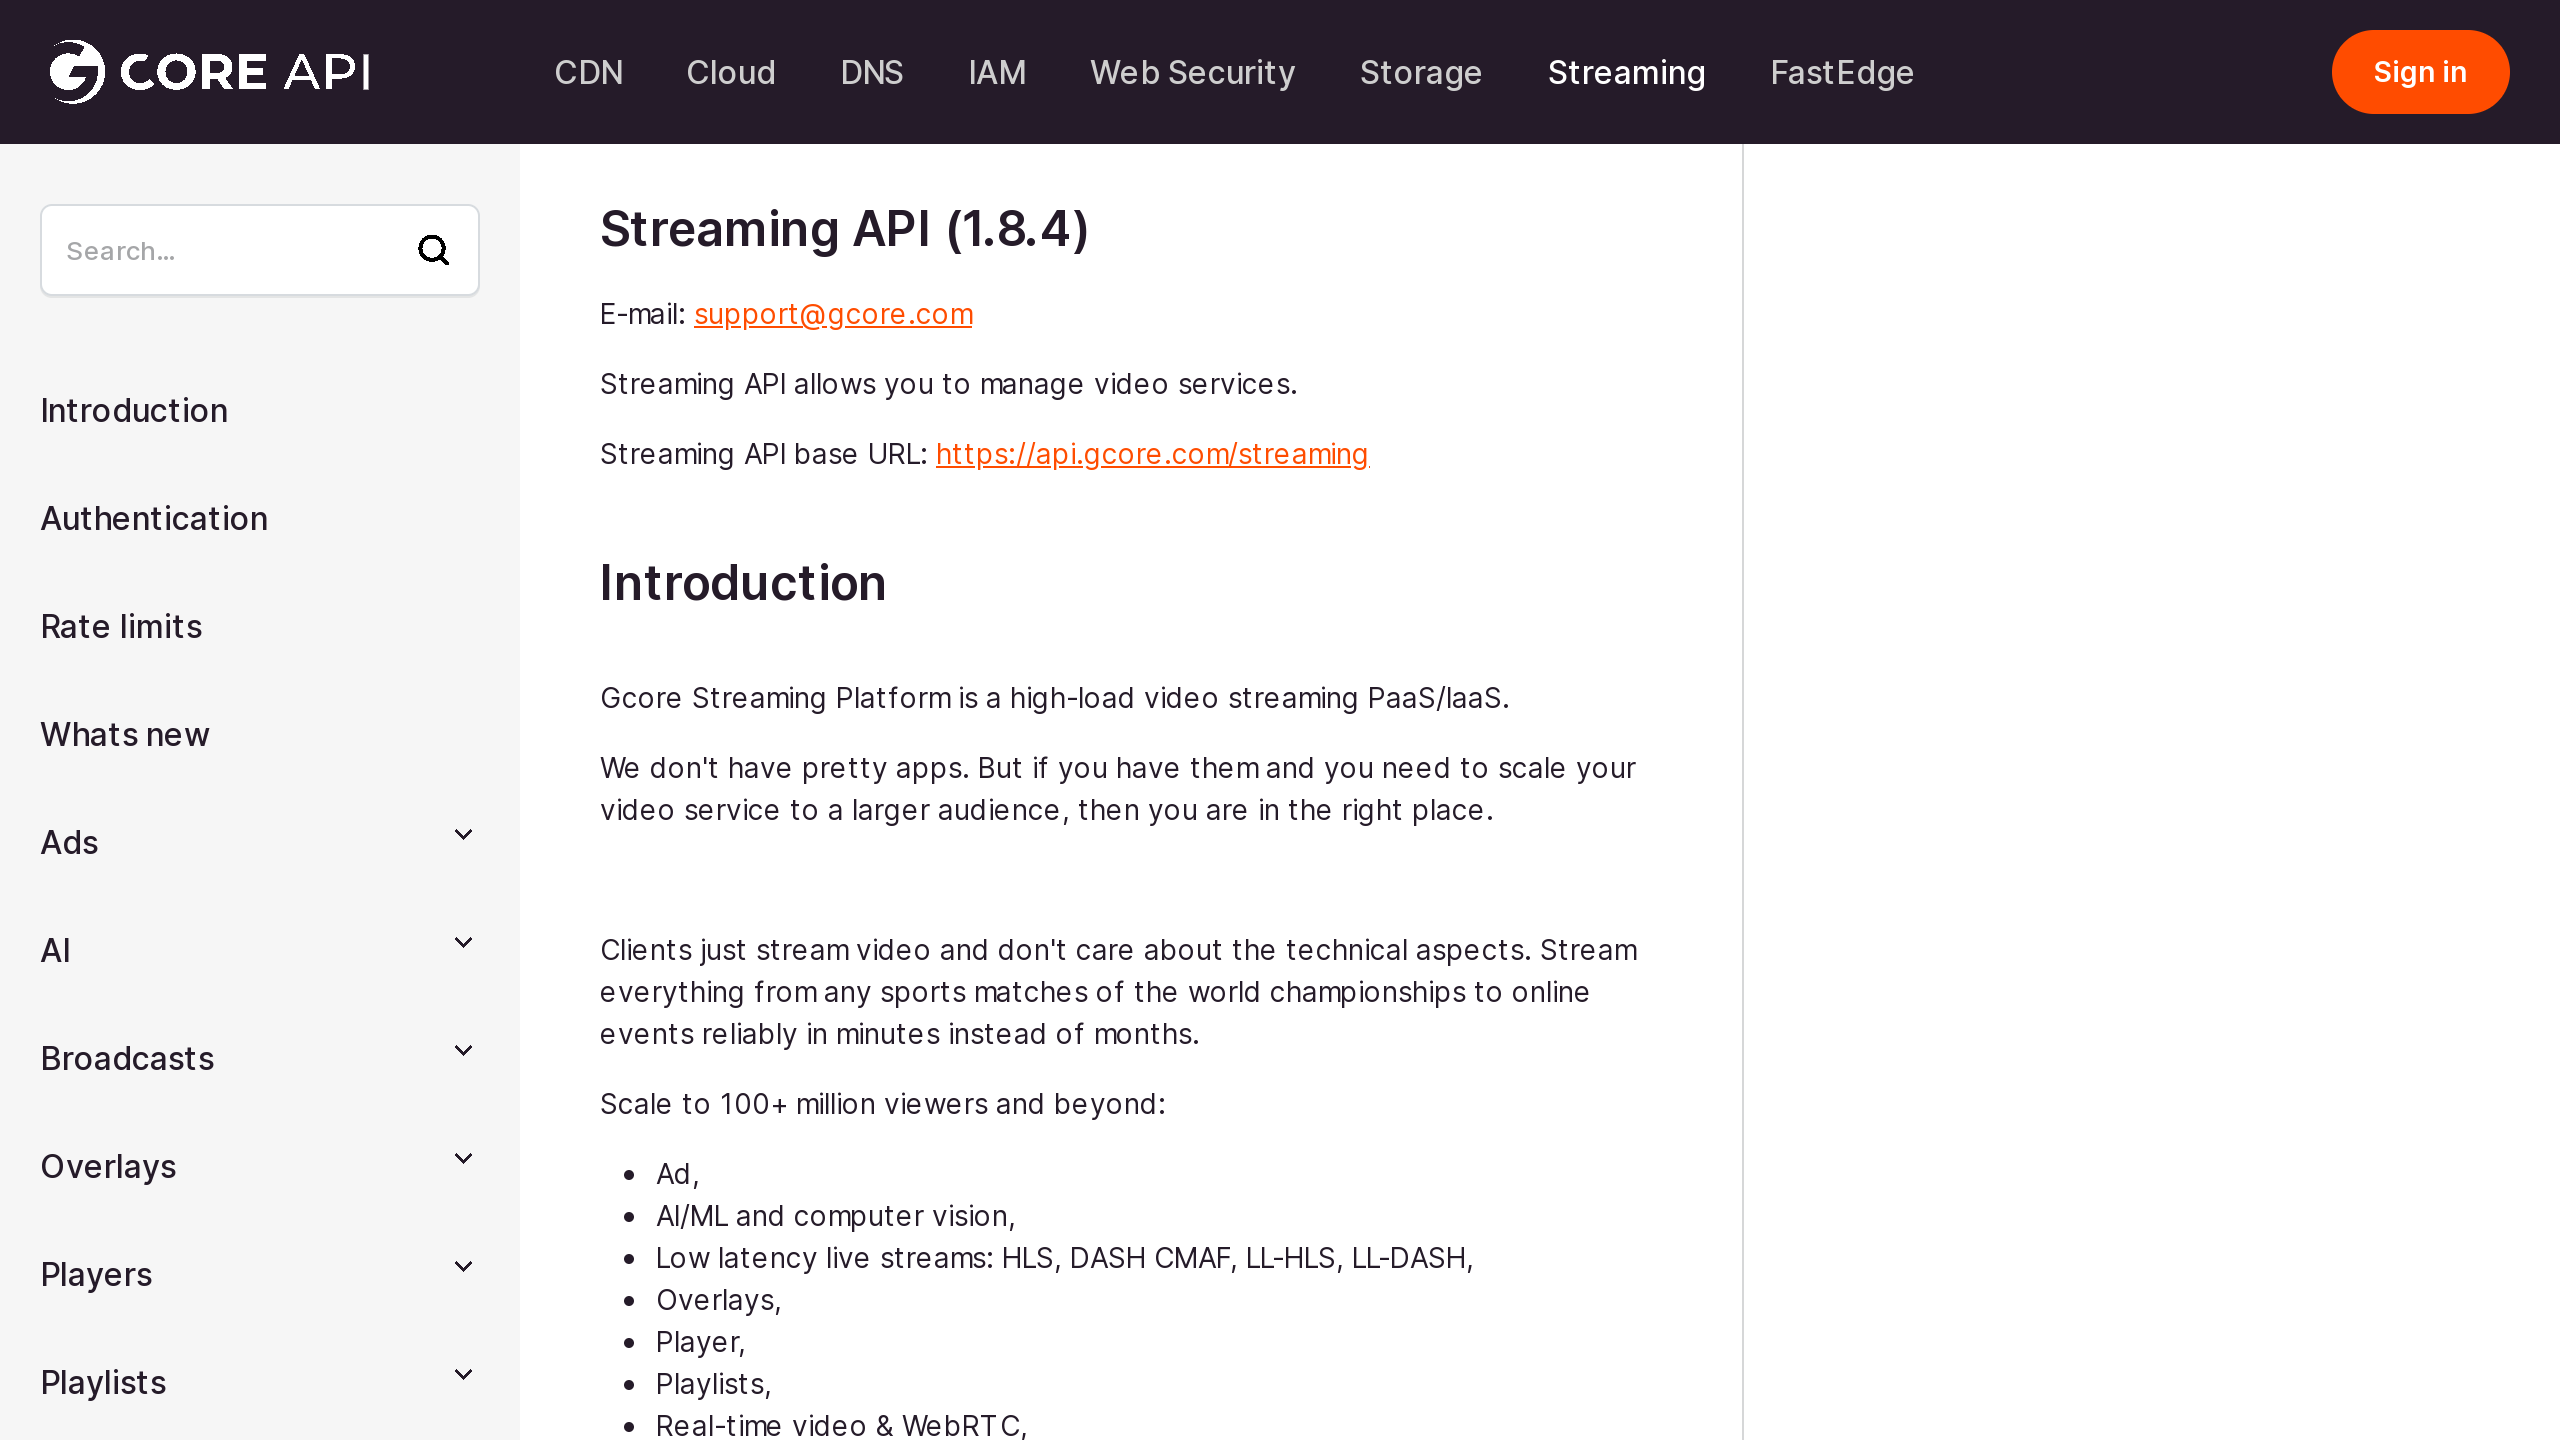 Gcore Streaming's website screenshot